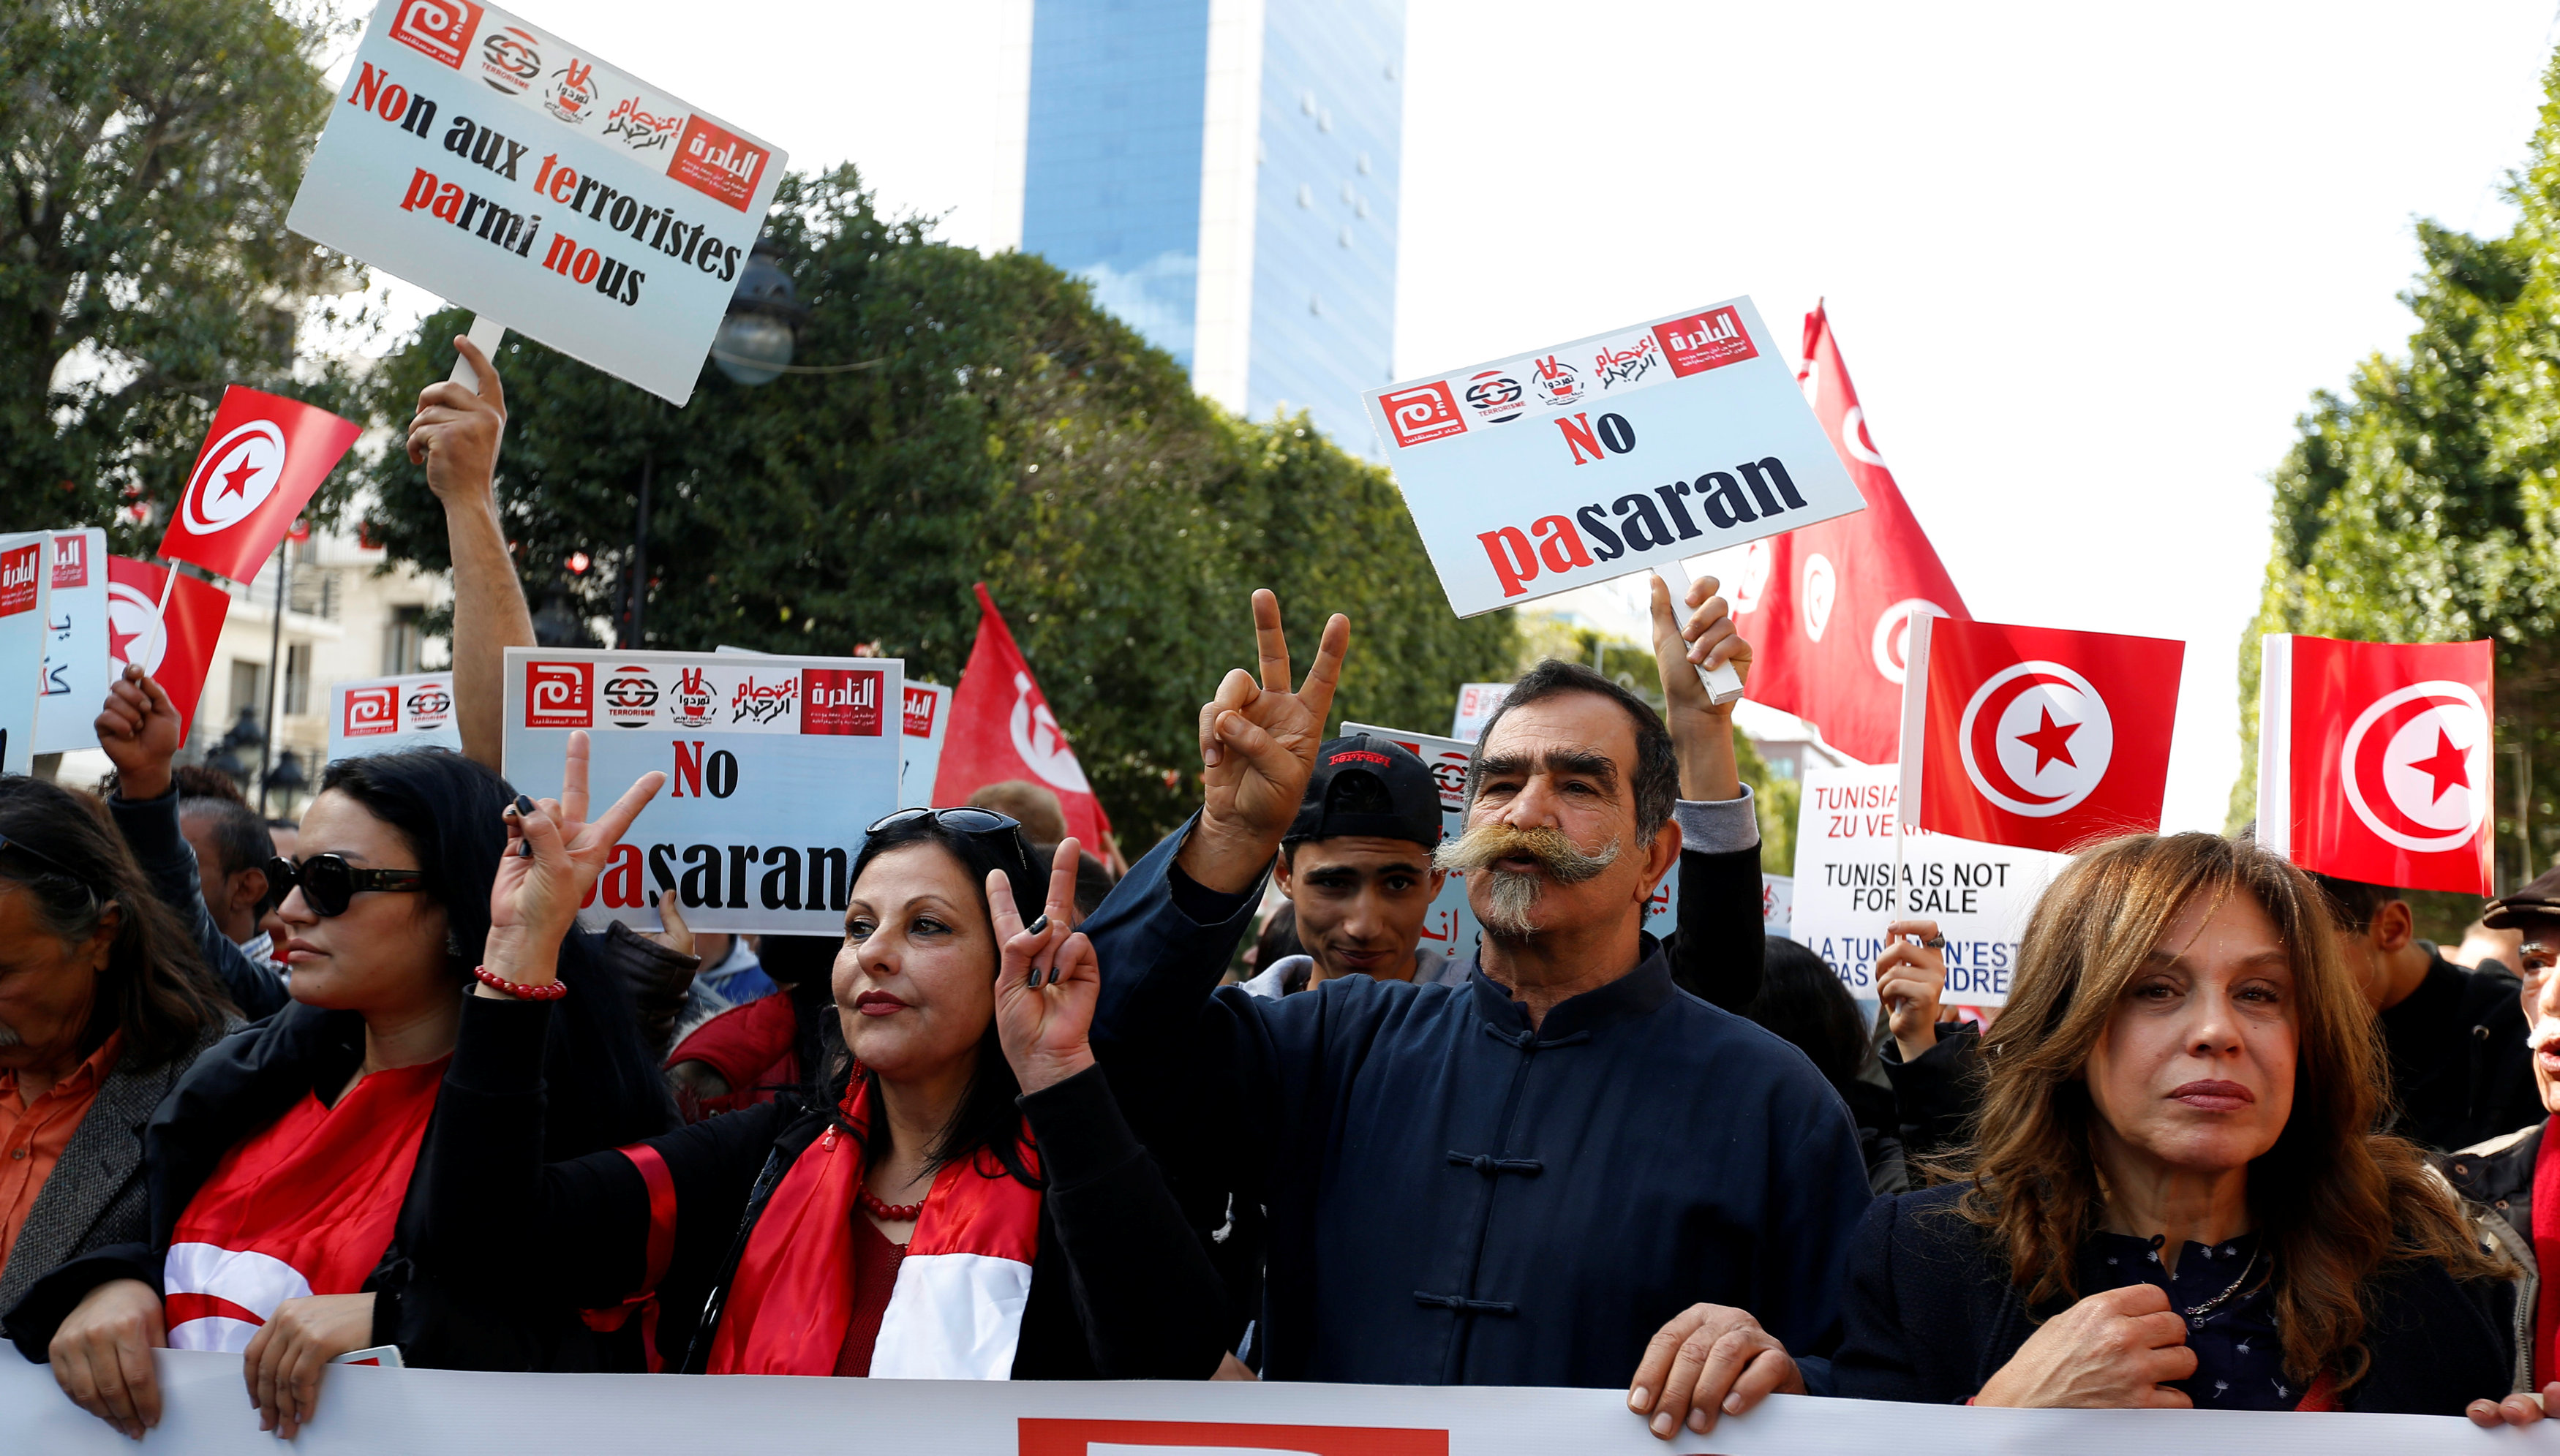 Βασανισμούς και «επιστροφή στο χθες» επιρρίπτει στην Τυνησία η Διεθνής Αμνηστία